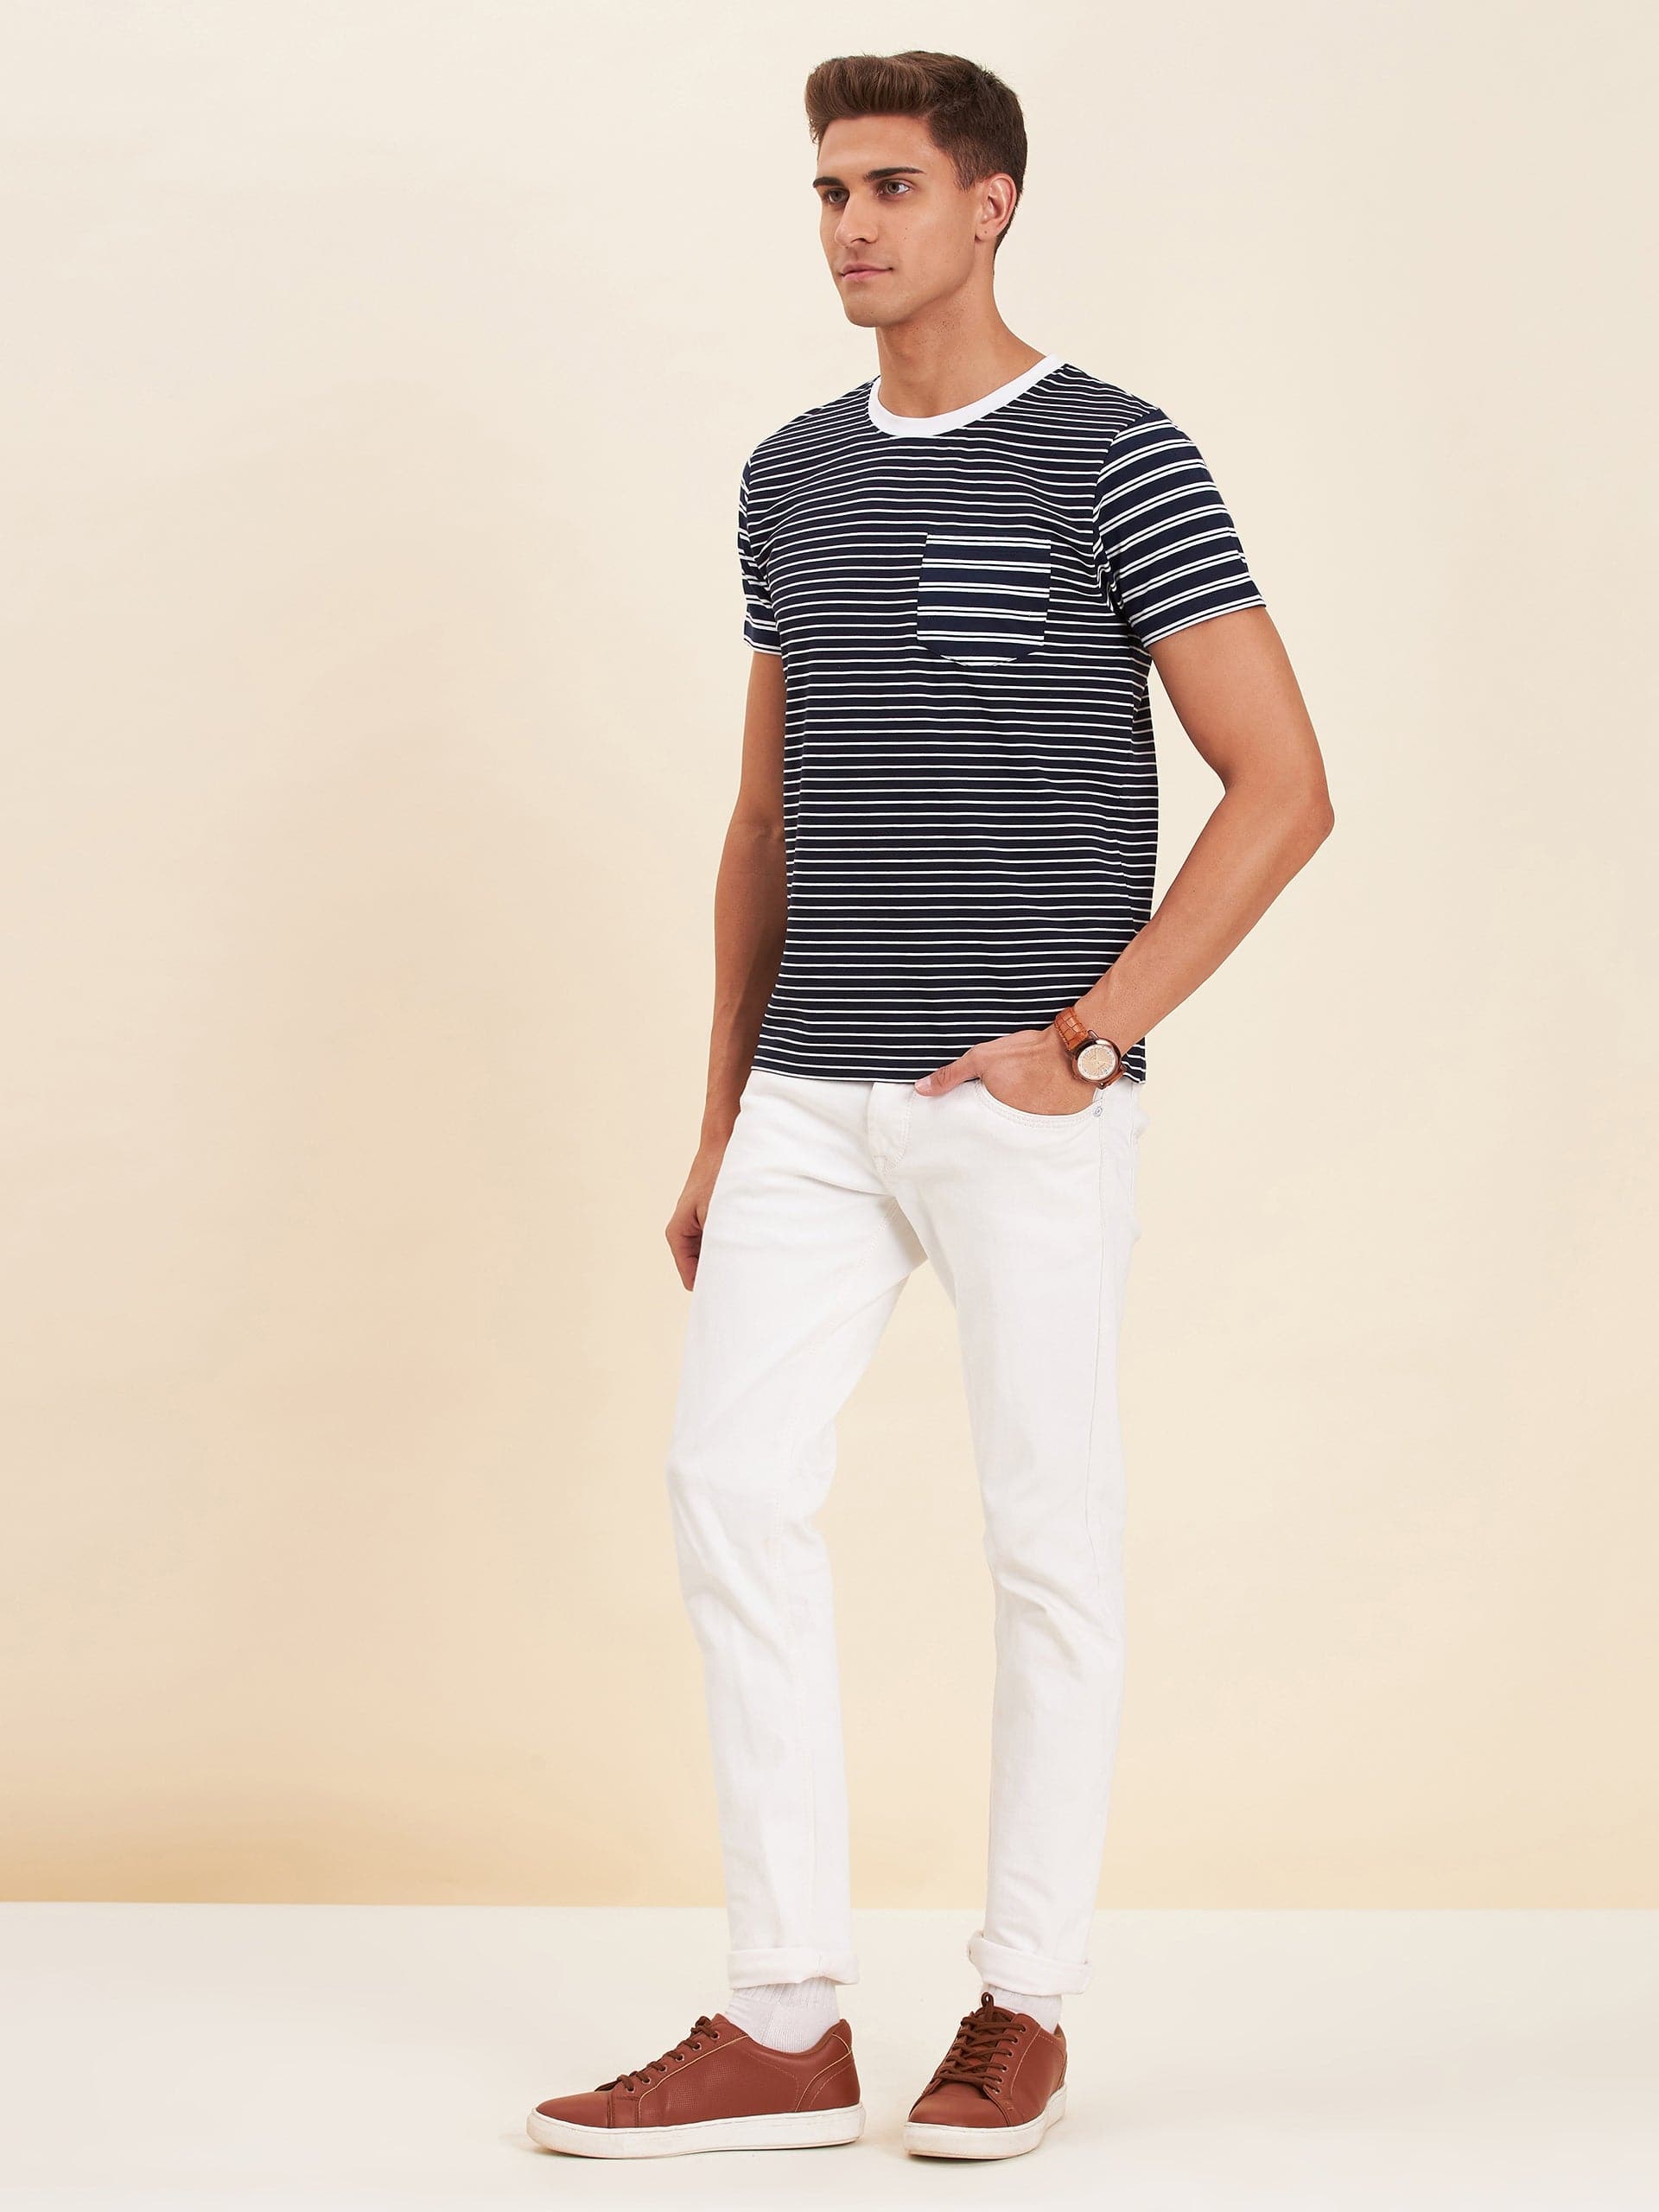 Men's Navy & White Stripes Pocket Cotton T-Shirt - LYUSH-MASCLN